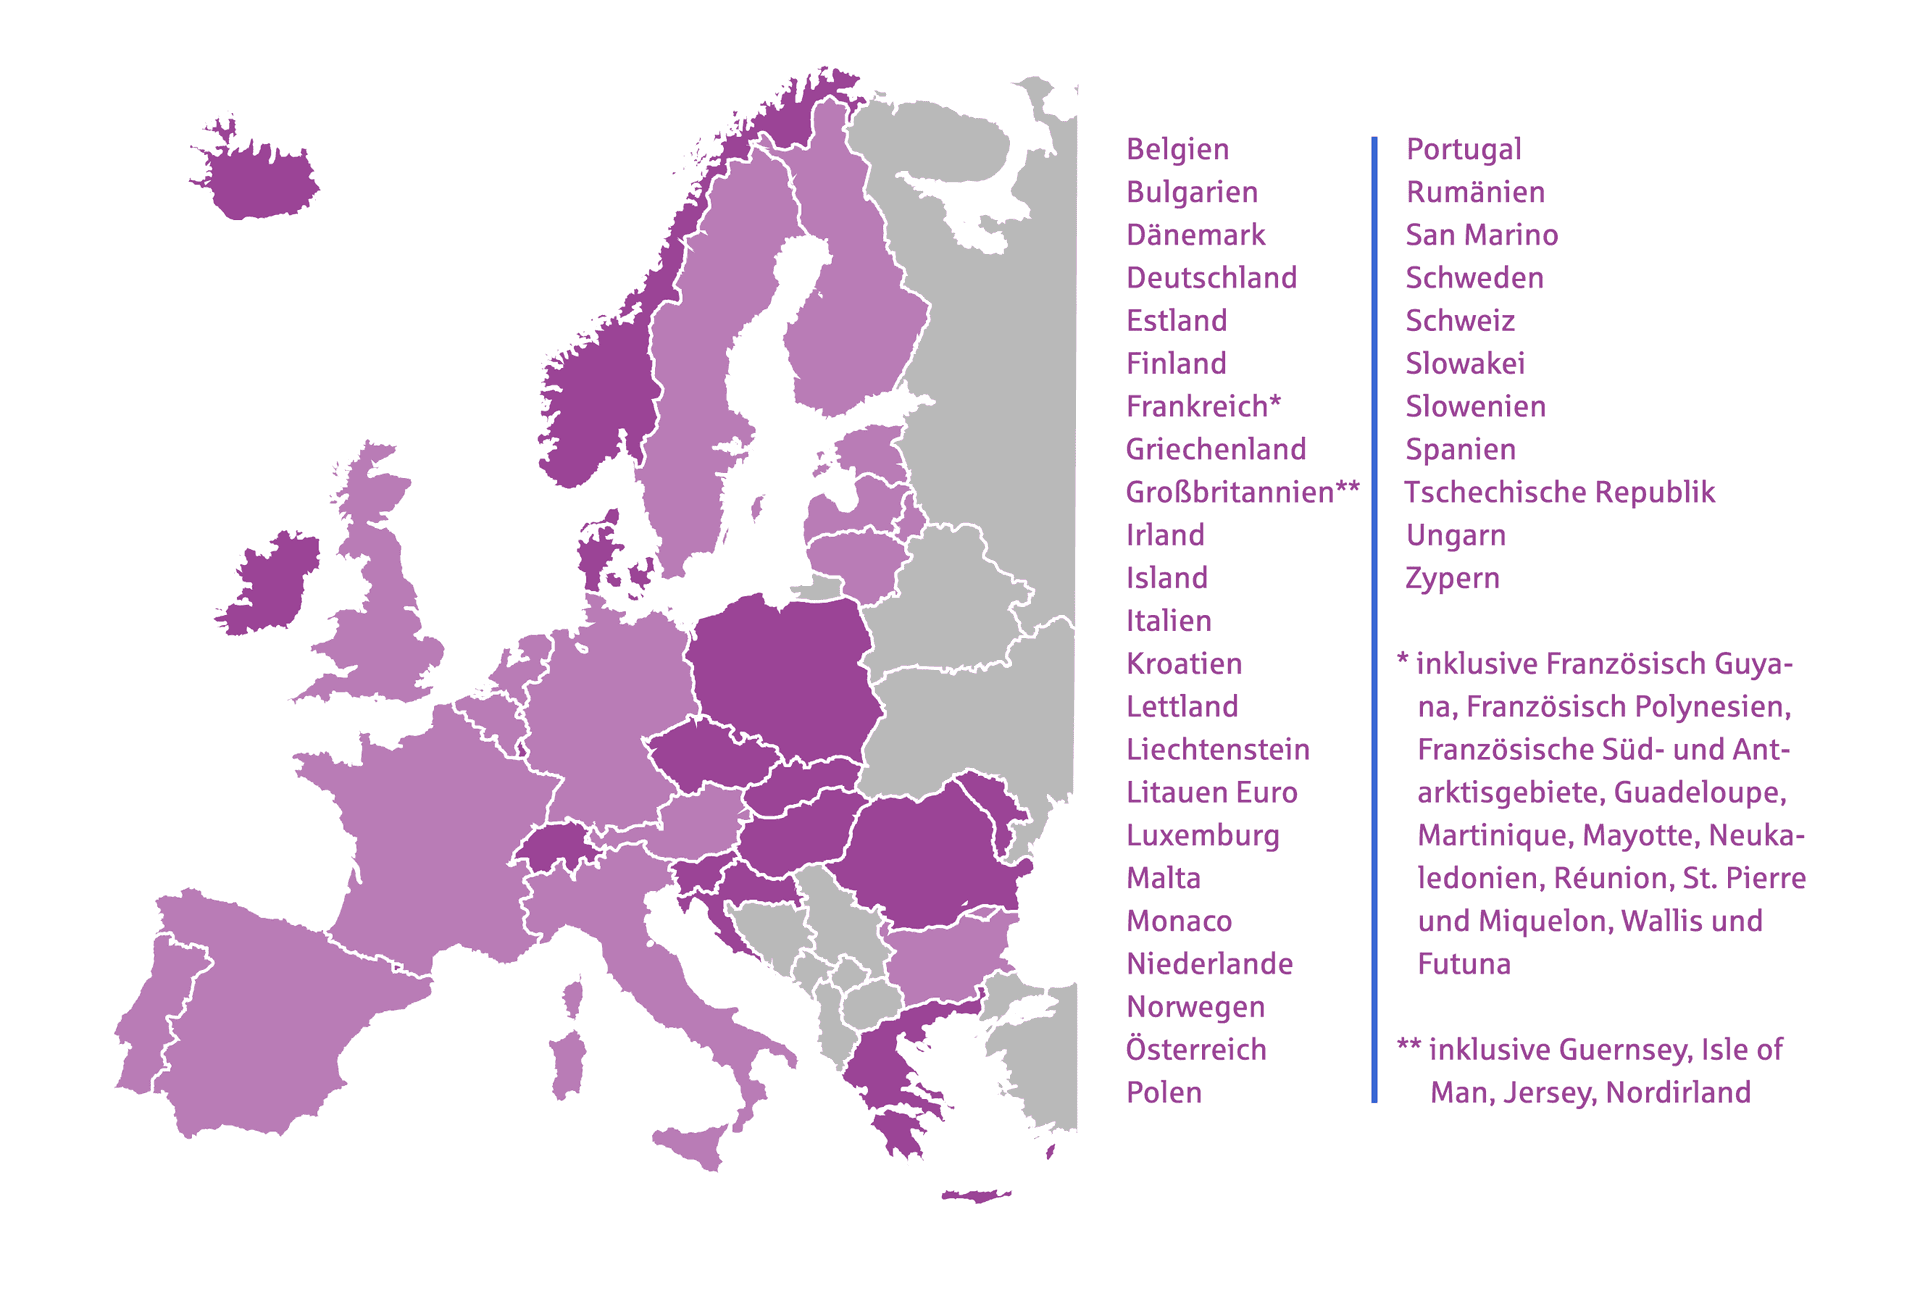 Karte von Europa mit den SEPA Ländern lila eingefärbt. Daneben sind die Länder noch mal alle aufgelistet.